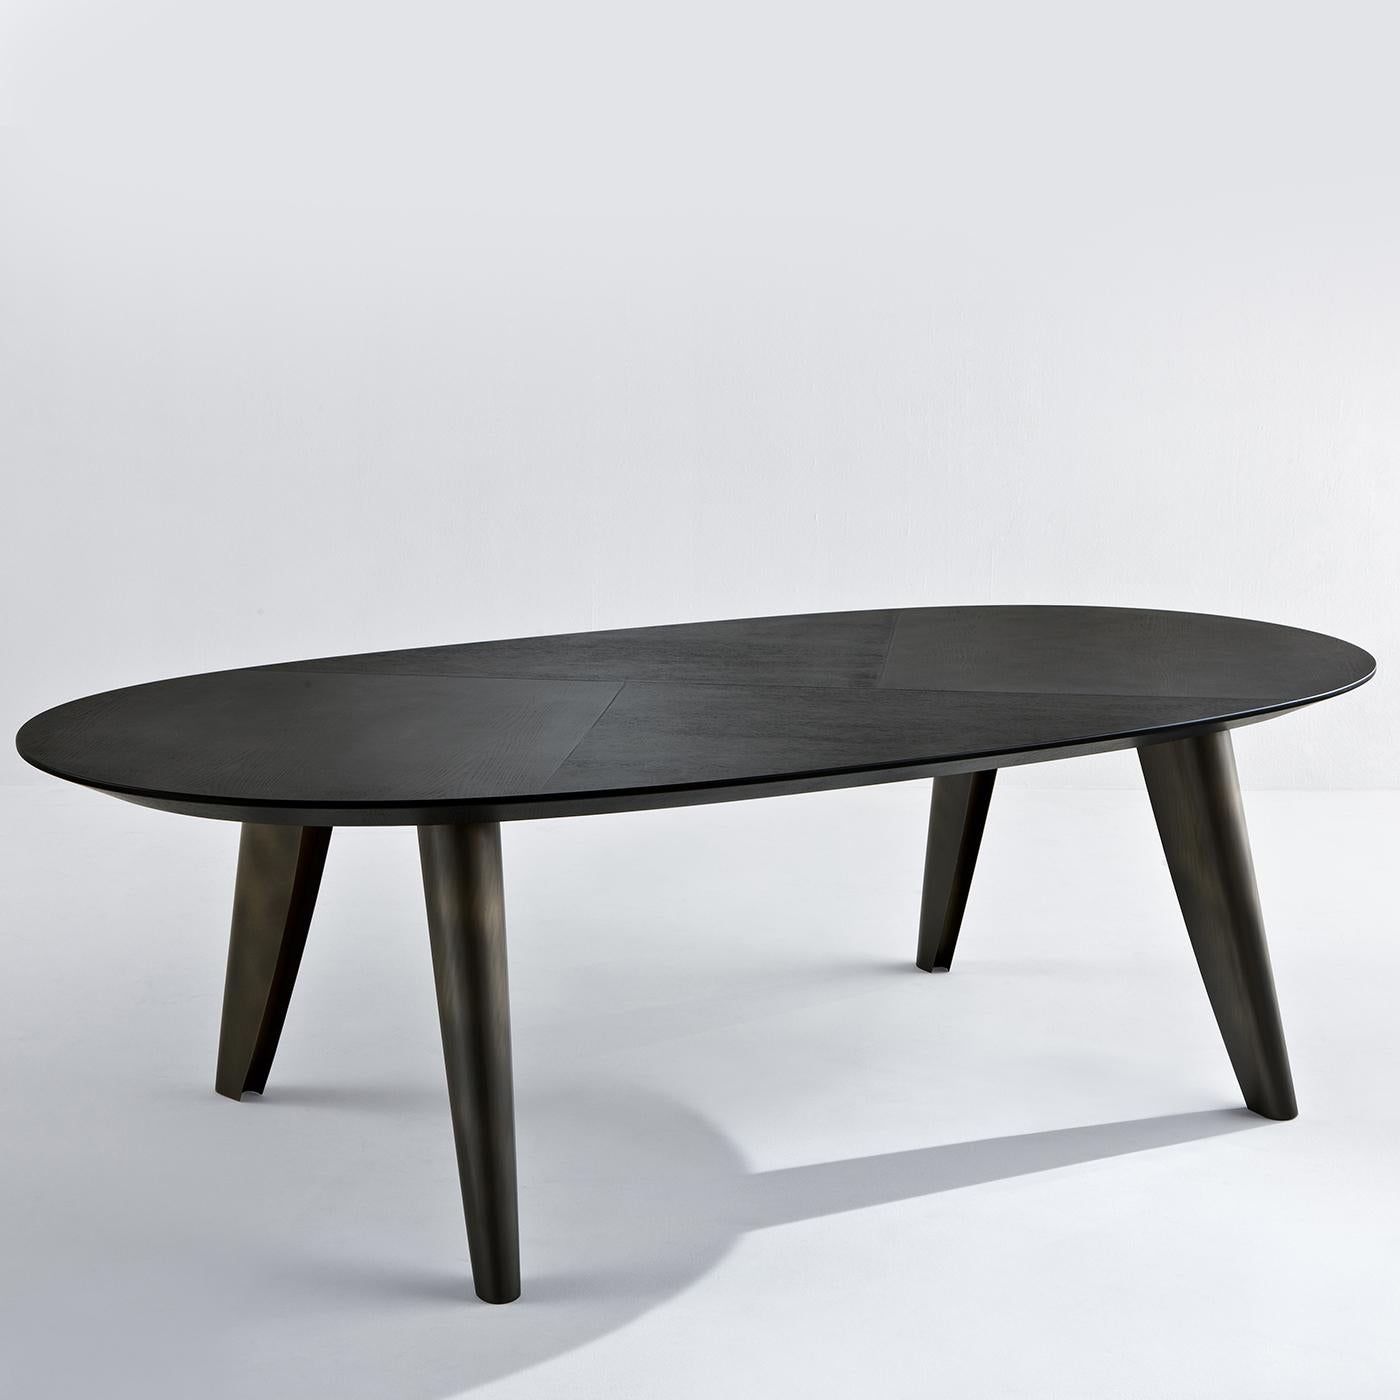 Dieser ovale Esstisch aus dunklem Steineichenholz ist einzigartig, da er ein quer verlaufendes Maserungsmuster auf der Tischplatte aufweist. Die Beine des Tisches sind aus dunklem Messing mit tabakfarbenem Finish und leicht schräg gestellt. Ein